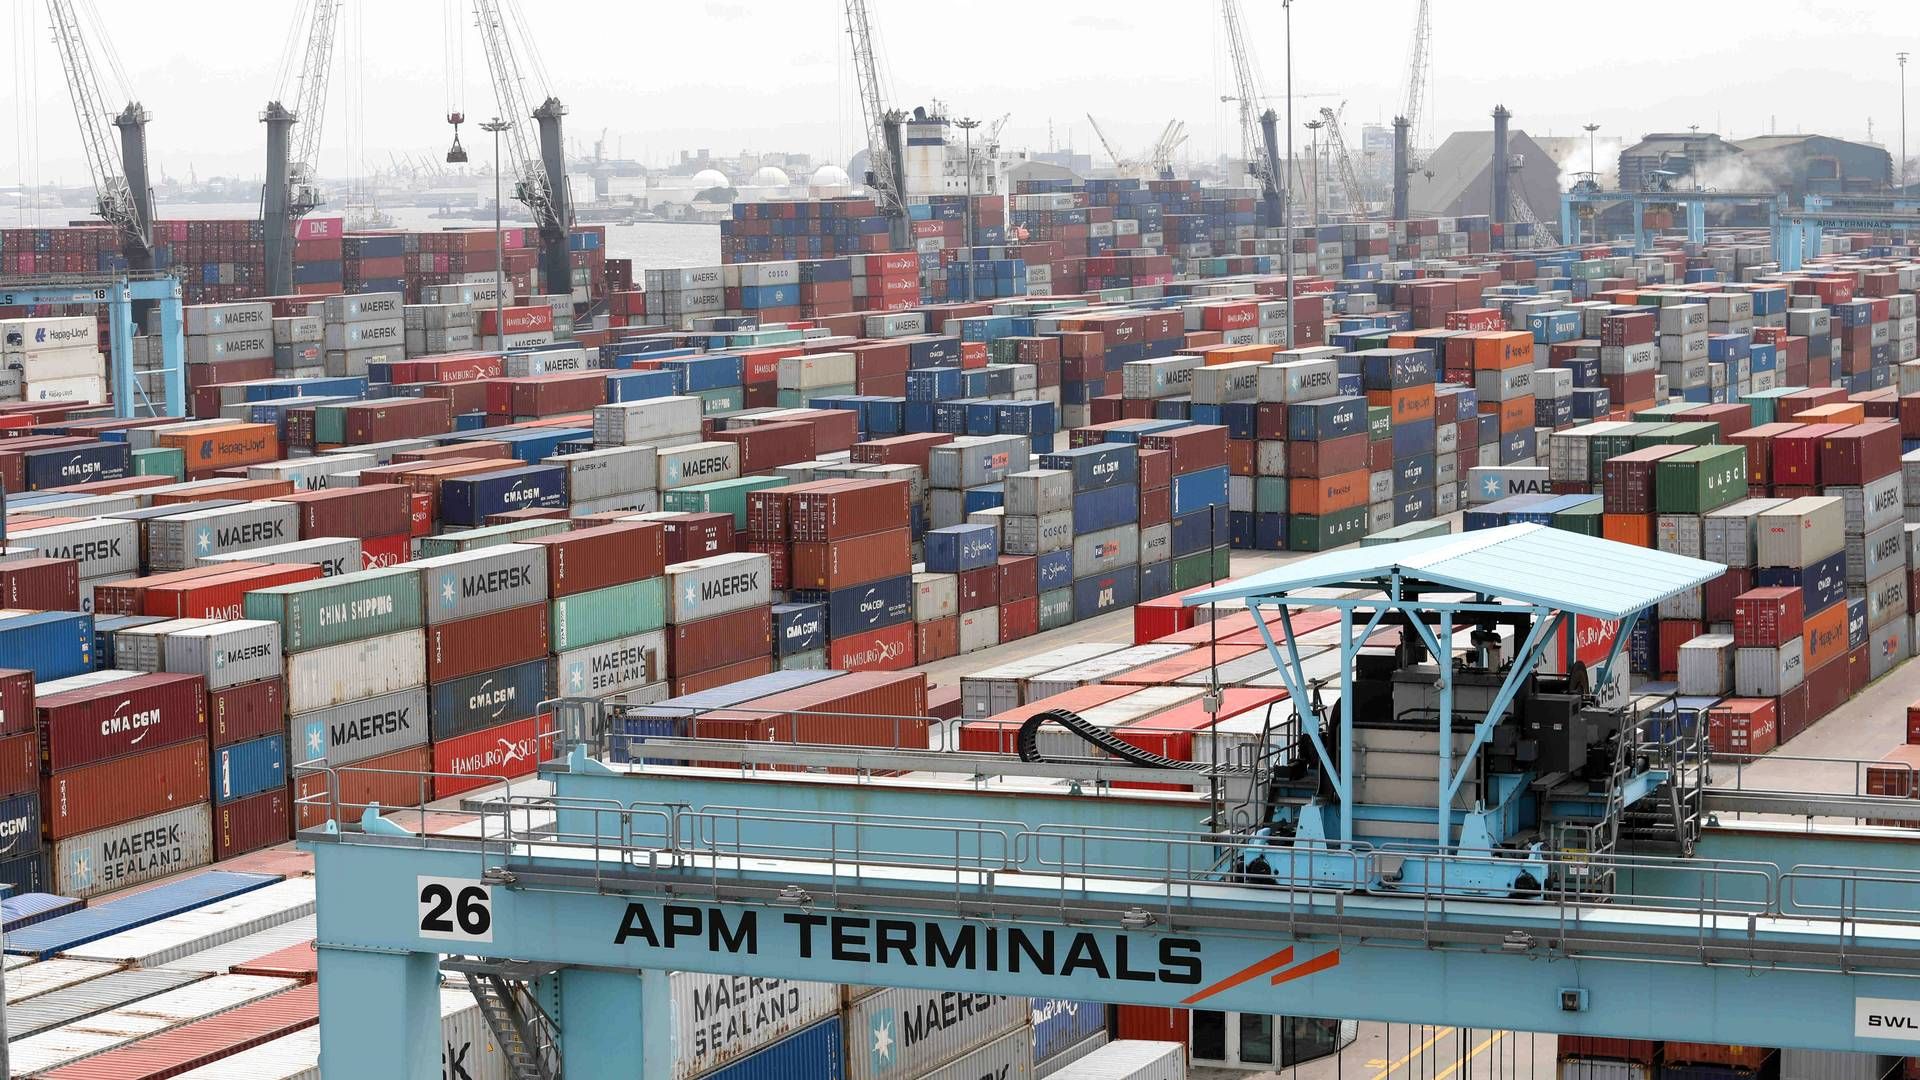 Maersks havneselskab, APM Terminals, har givet lønforhøjelse til sine ansatte i Monrovia i Liberia, efter en årelang strid om aflønning. | Foto: Temilade Adelaja/Reuters/Ritzau Scanpix